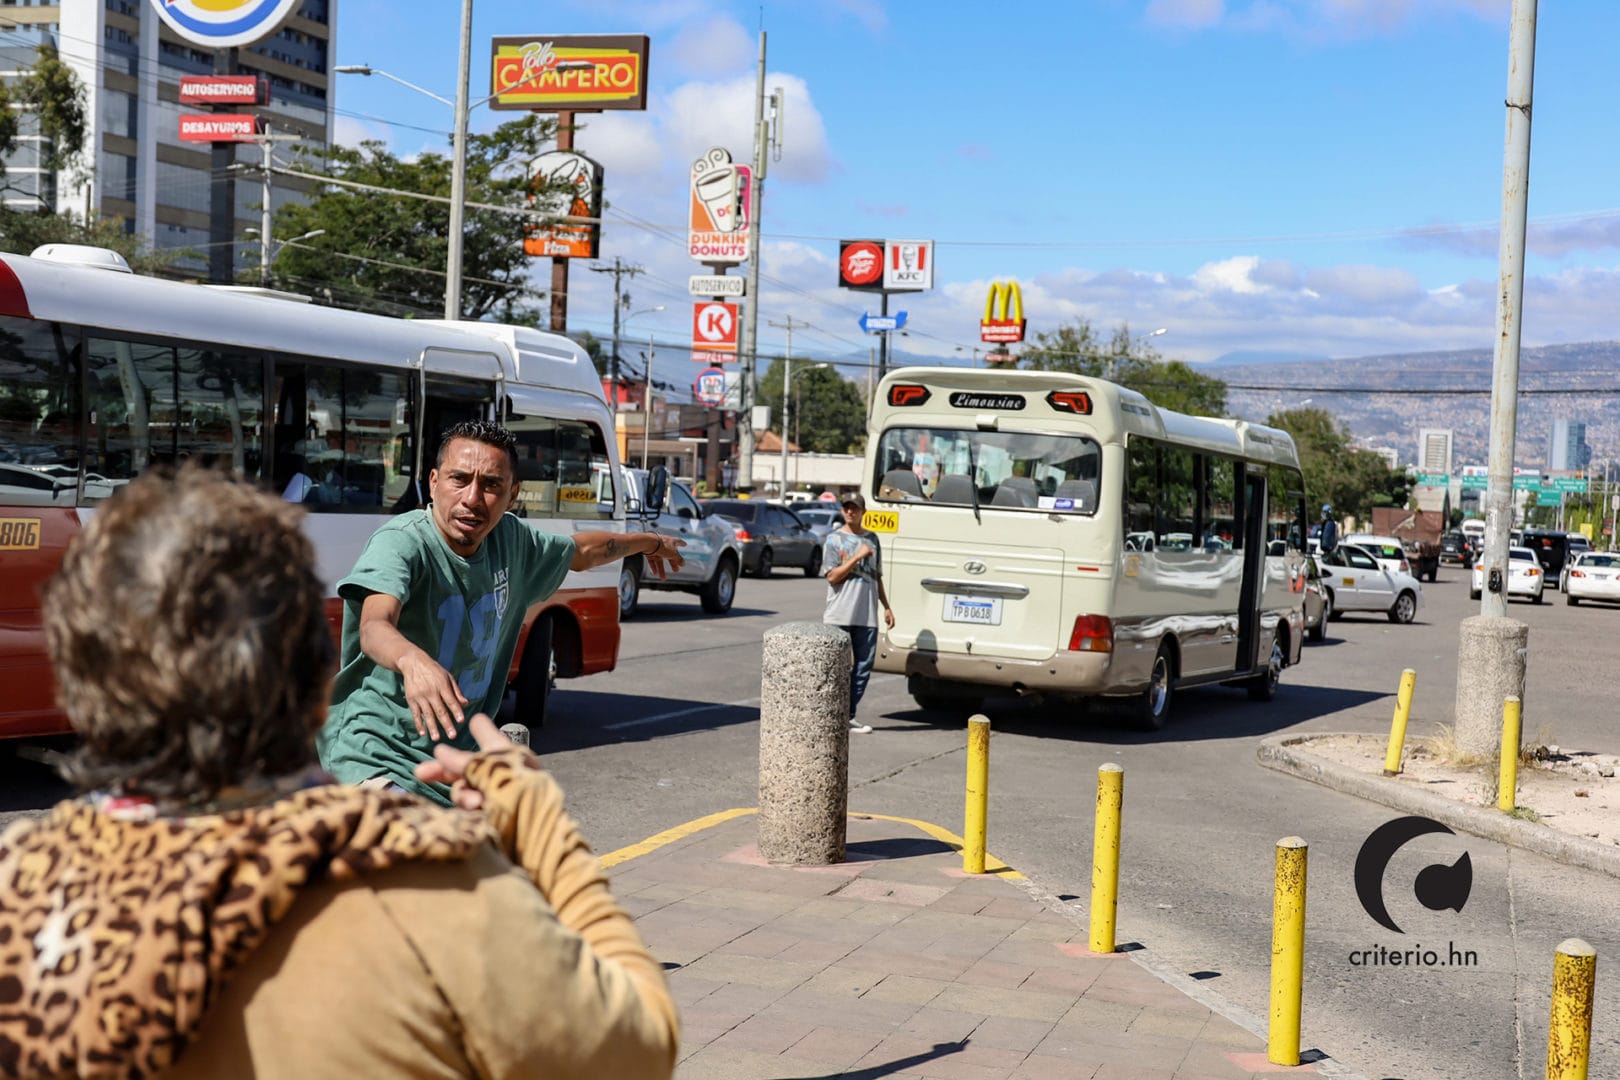 Cobrador de bus en tegucigalpa llevando señora al bus